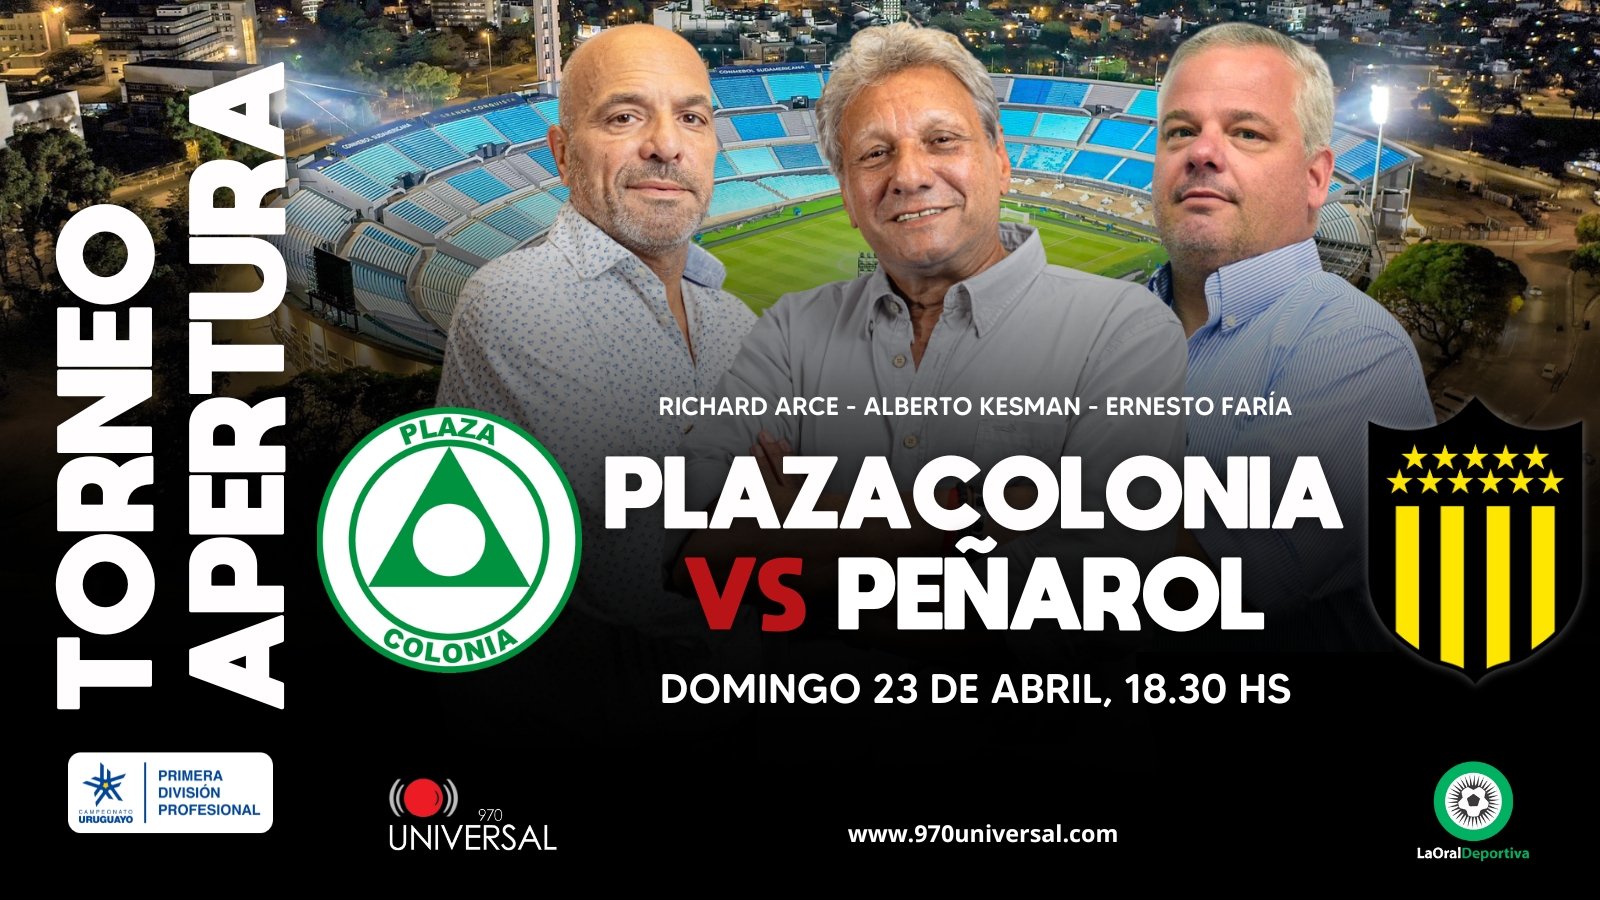 Plaza Colonia 1-2 Peñarol